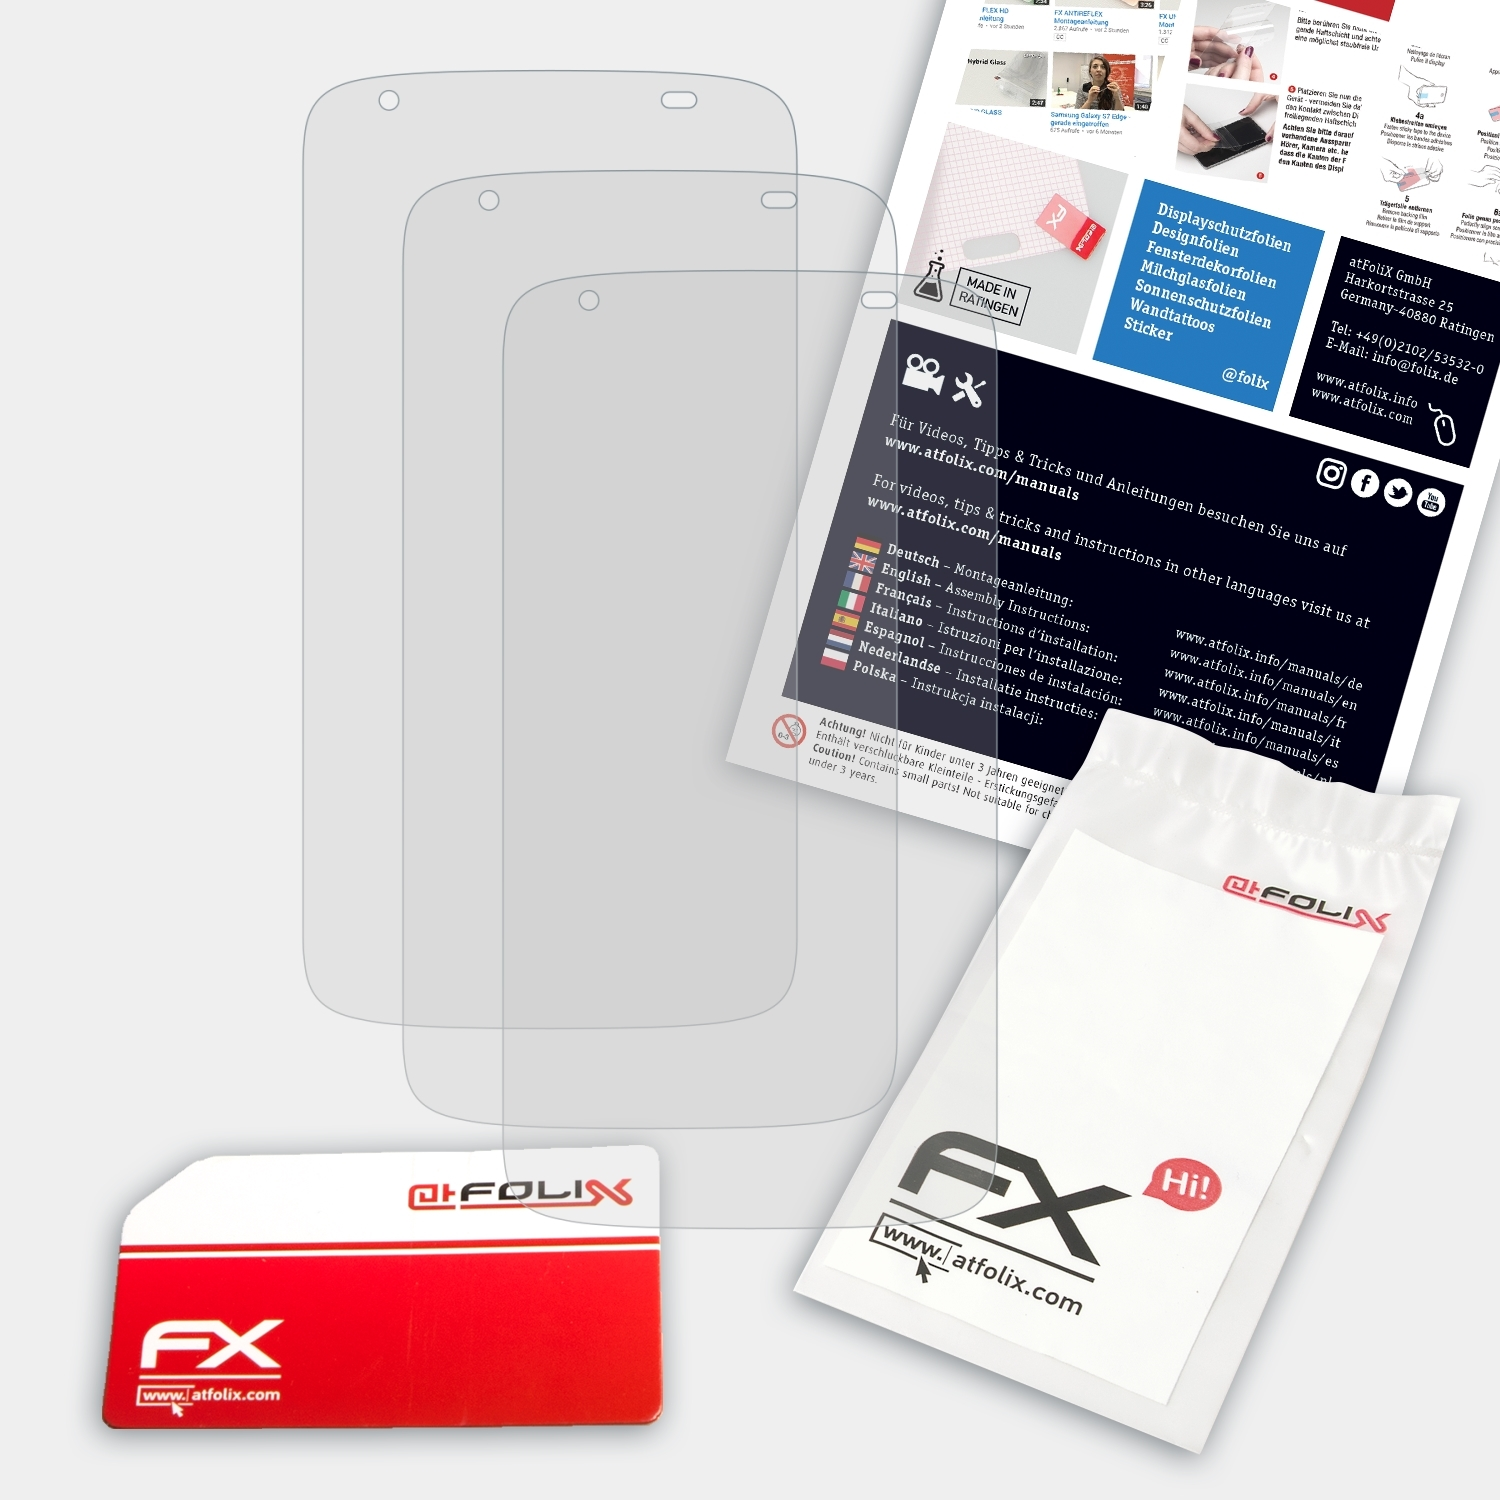 ATFOLIX 3x FX-Antireflex Displayschutz(für HTC 526G+) Desire